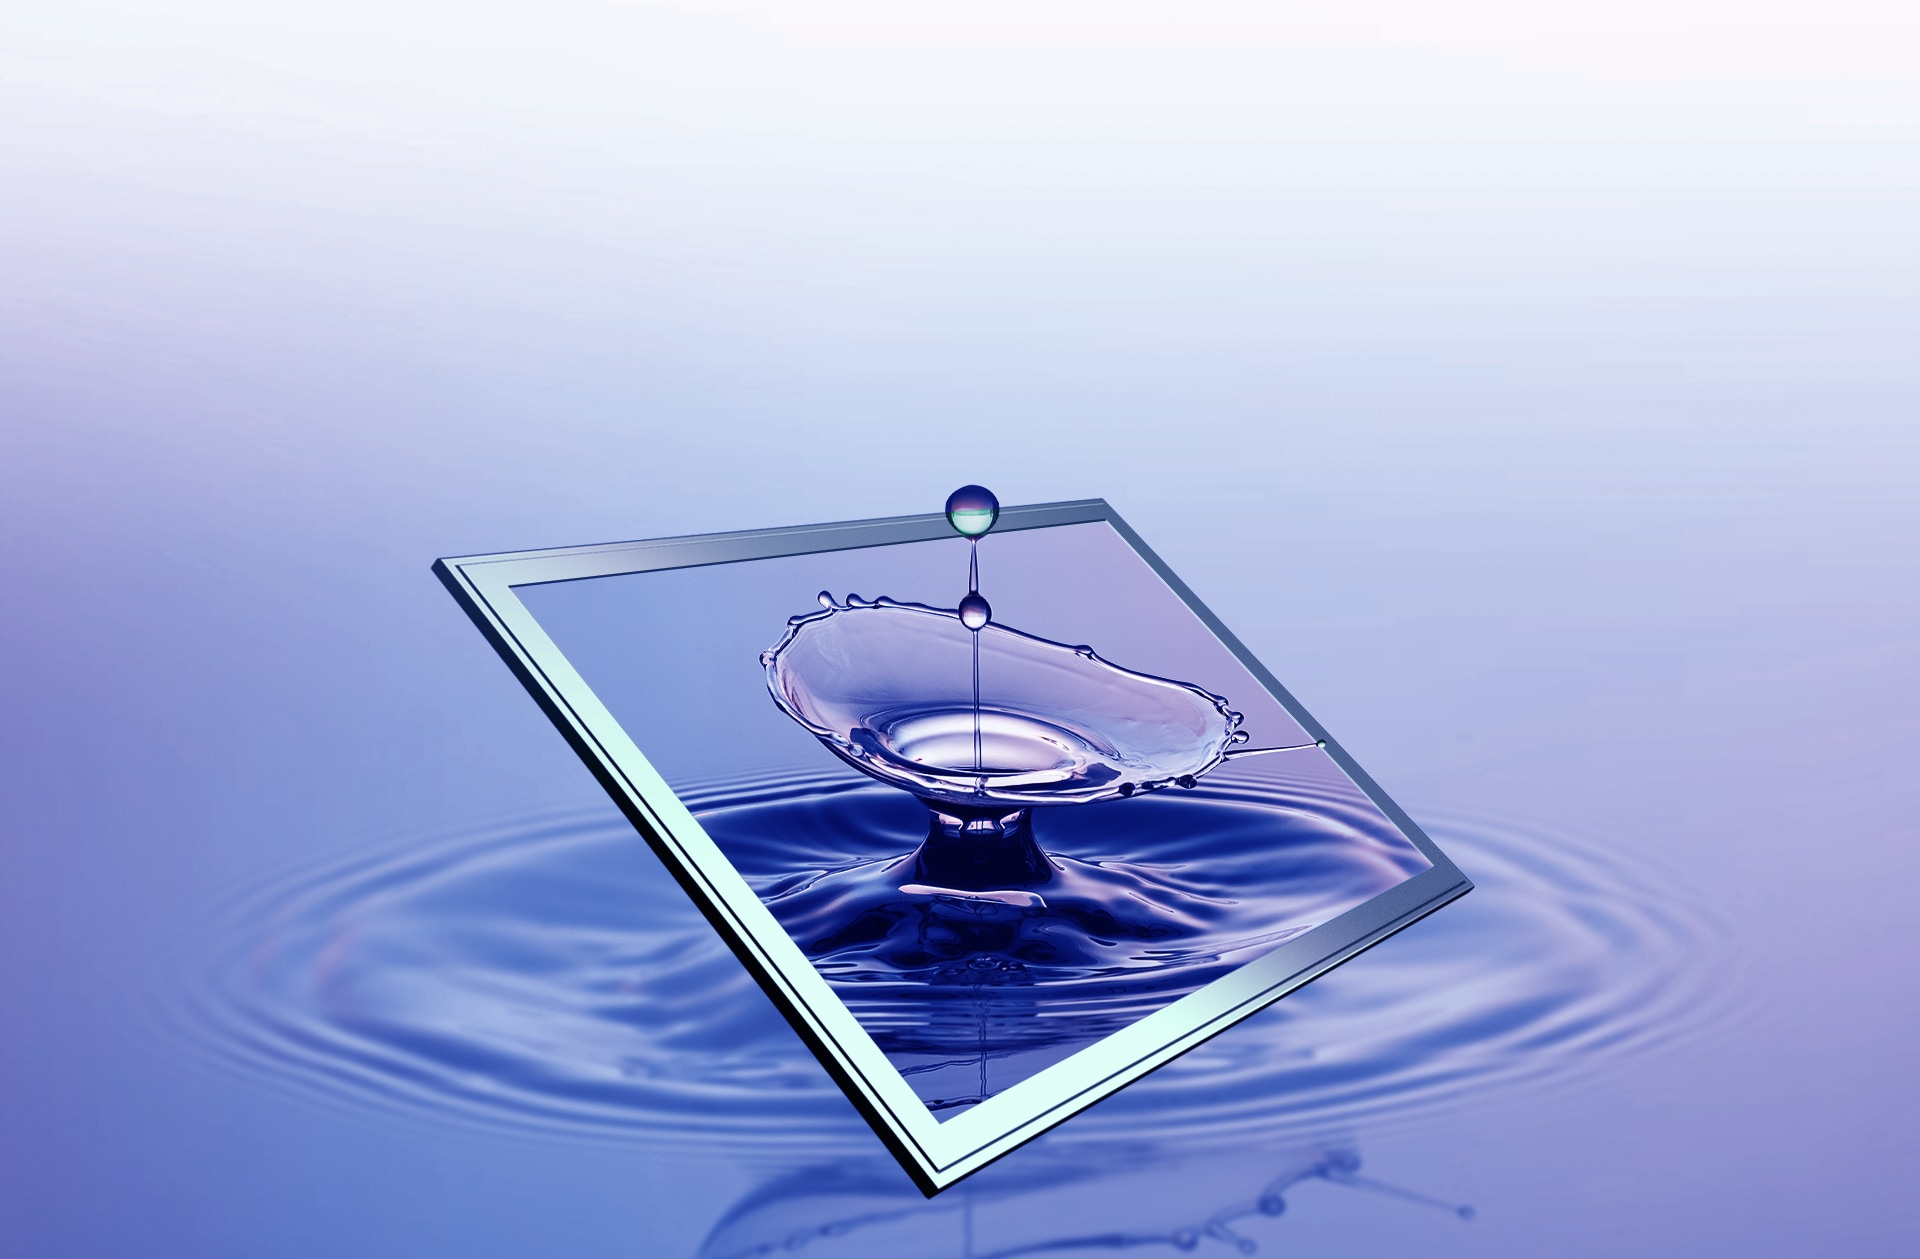 물방울이 물로 떨어지는 장면의 위에 있는 아이소셀 GN5의 이미지.